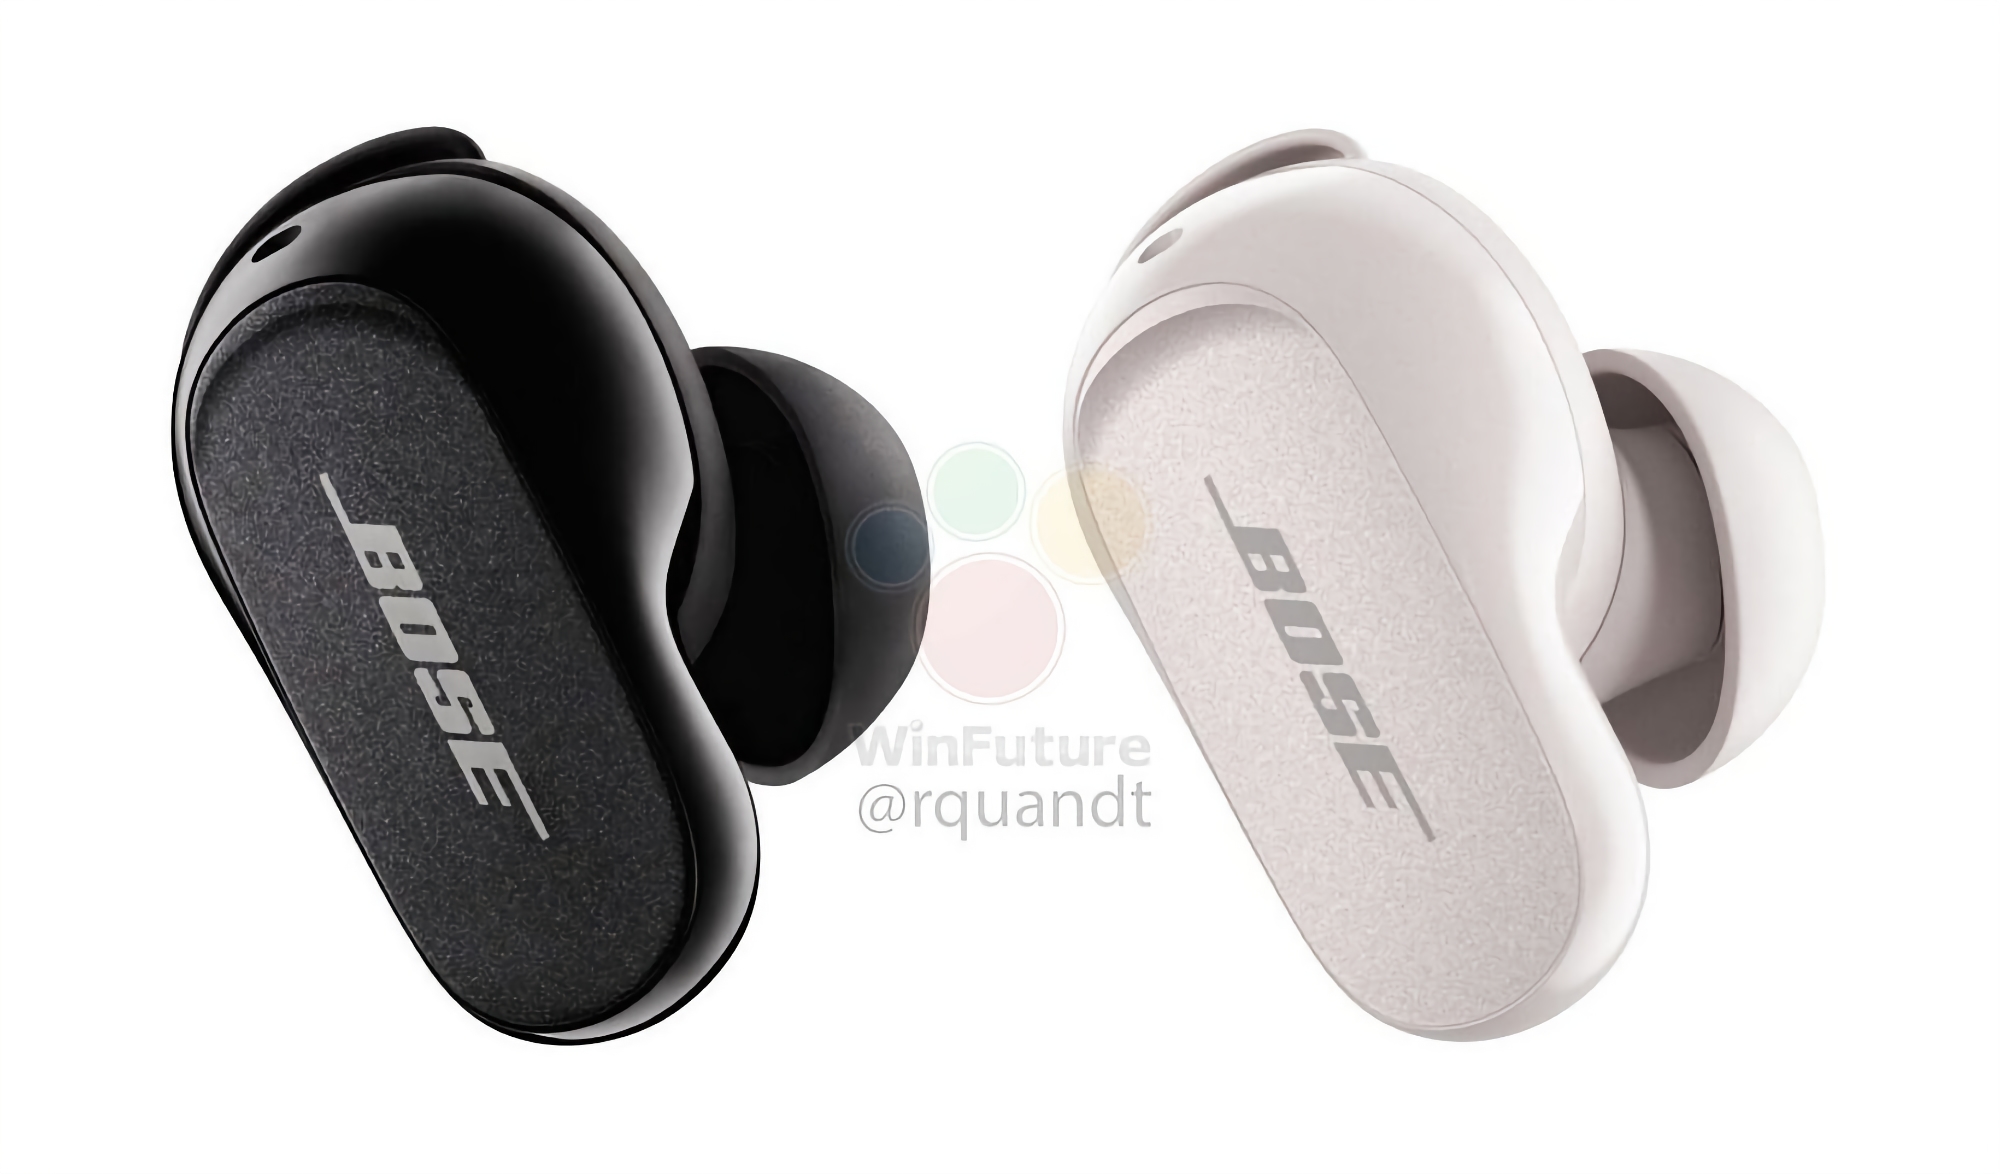 Bose prépare les TWS QuietComfort Earbuds II avec un nouveau design, ANC et un prix de 299 $.